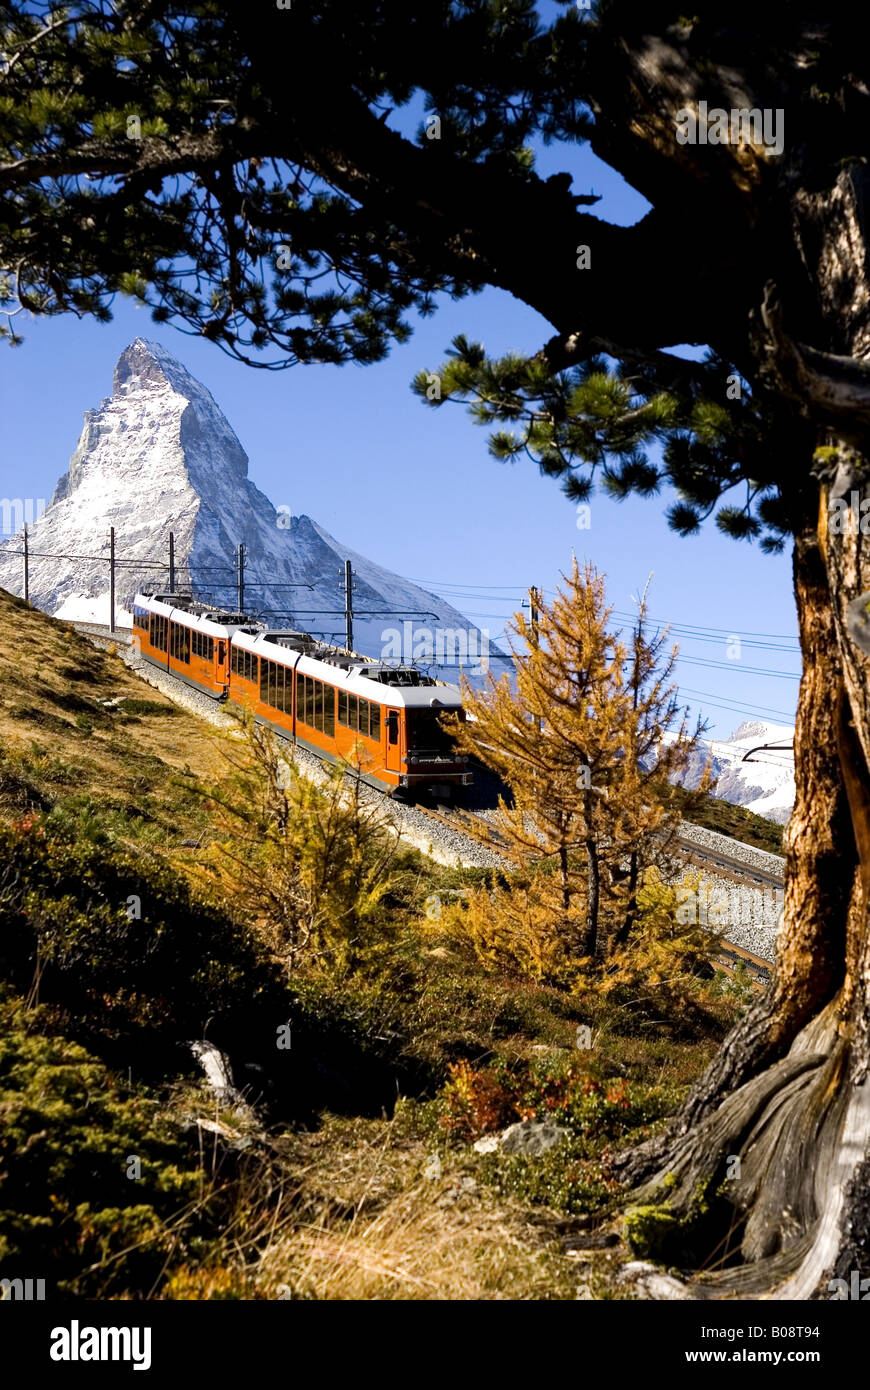 Gornergratbahn, Gornergrat railway in the background Matterhorn, Switzerland Stock Photo